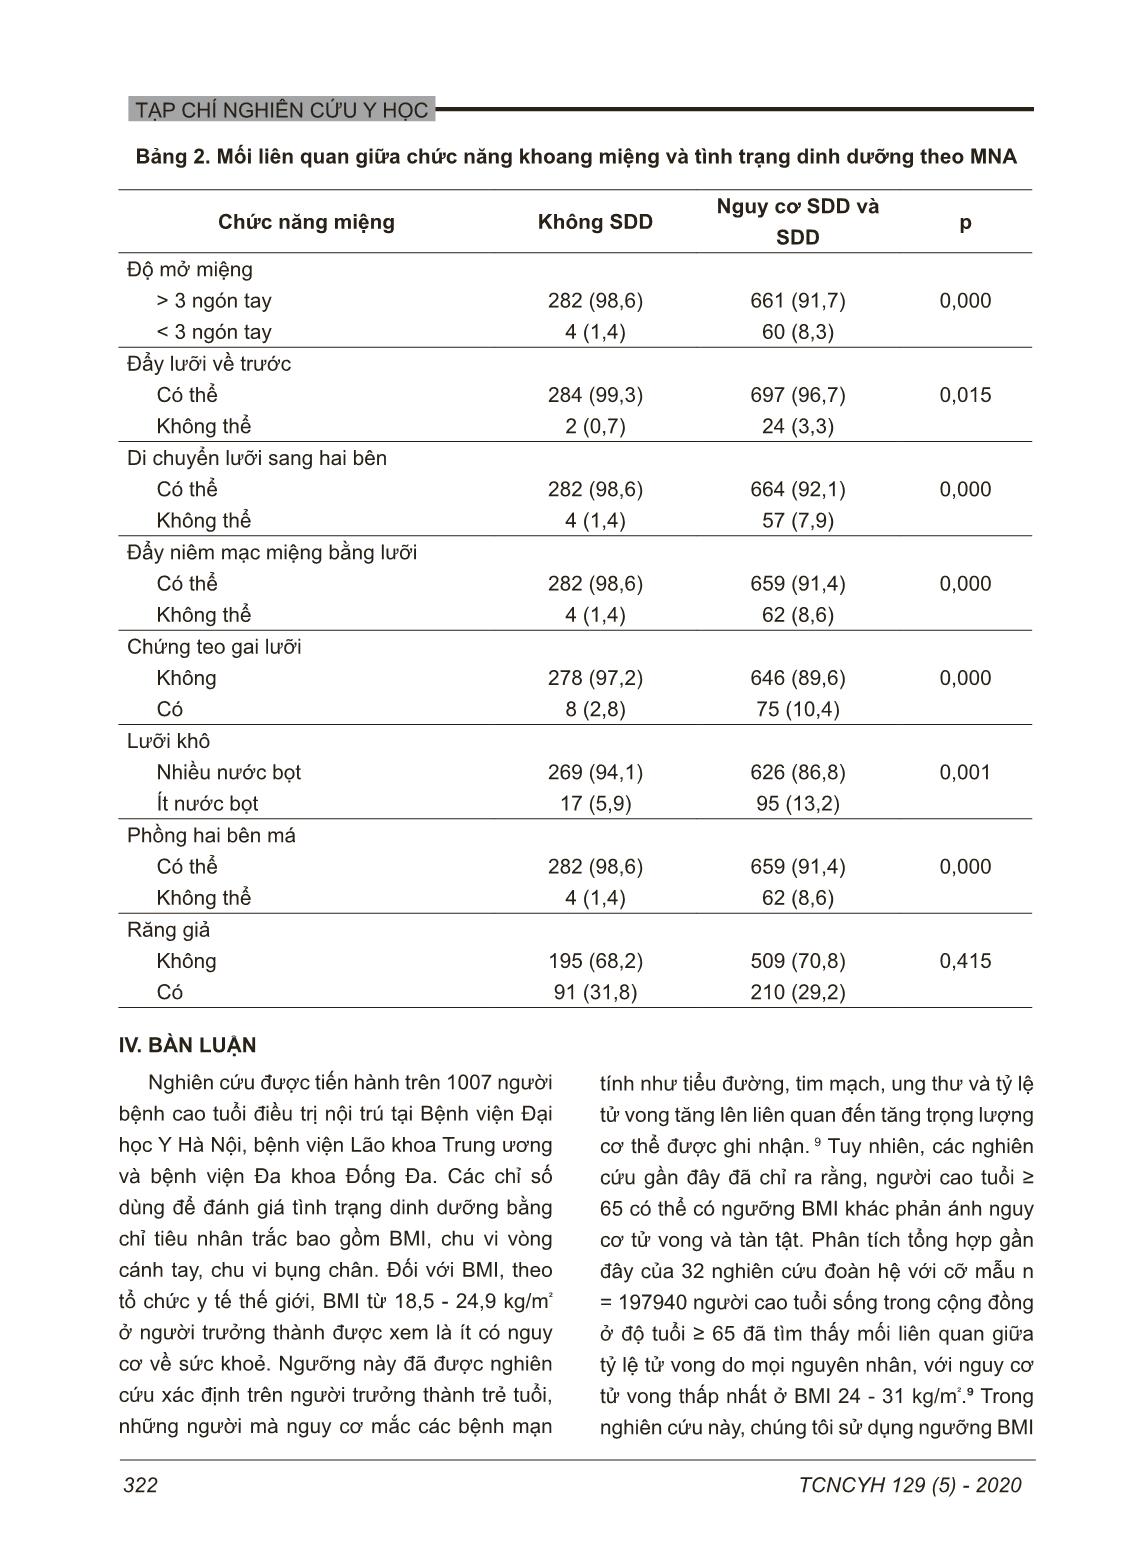 Tình trạng dinh dưỡng và chức năng khoang miệng người bệnh cao tuổi tại một số bệnh viện Hà Nội trang 5